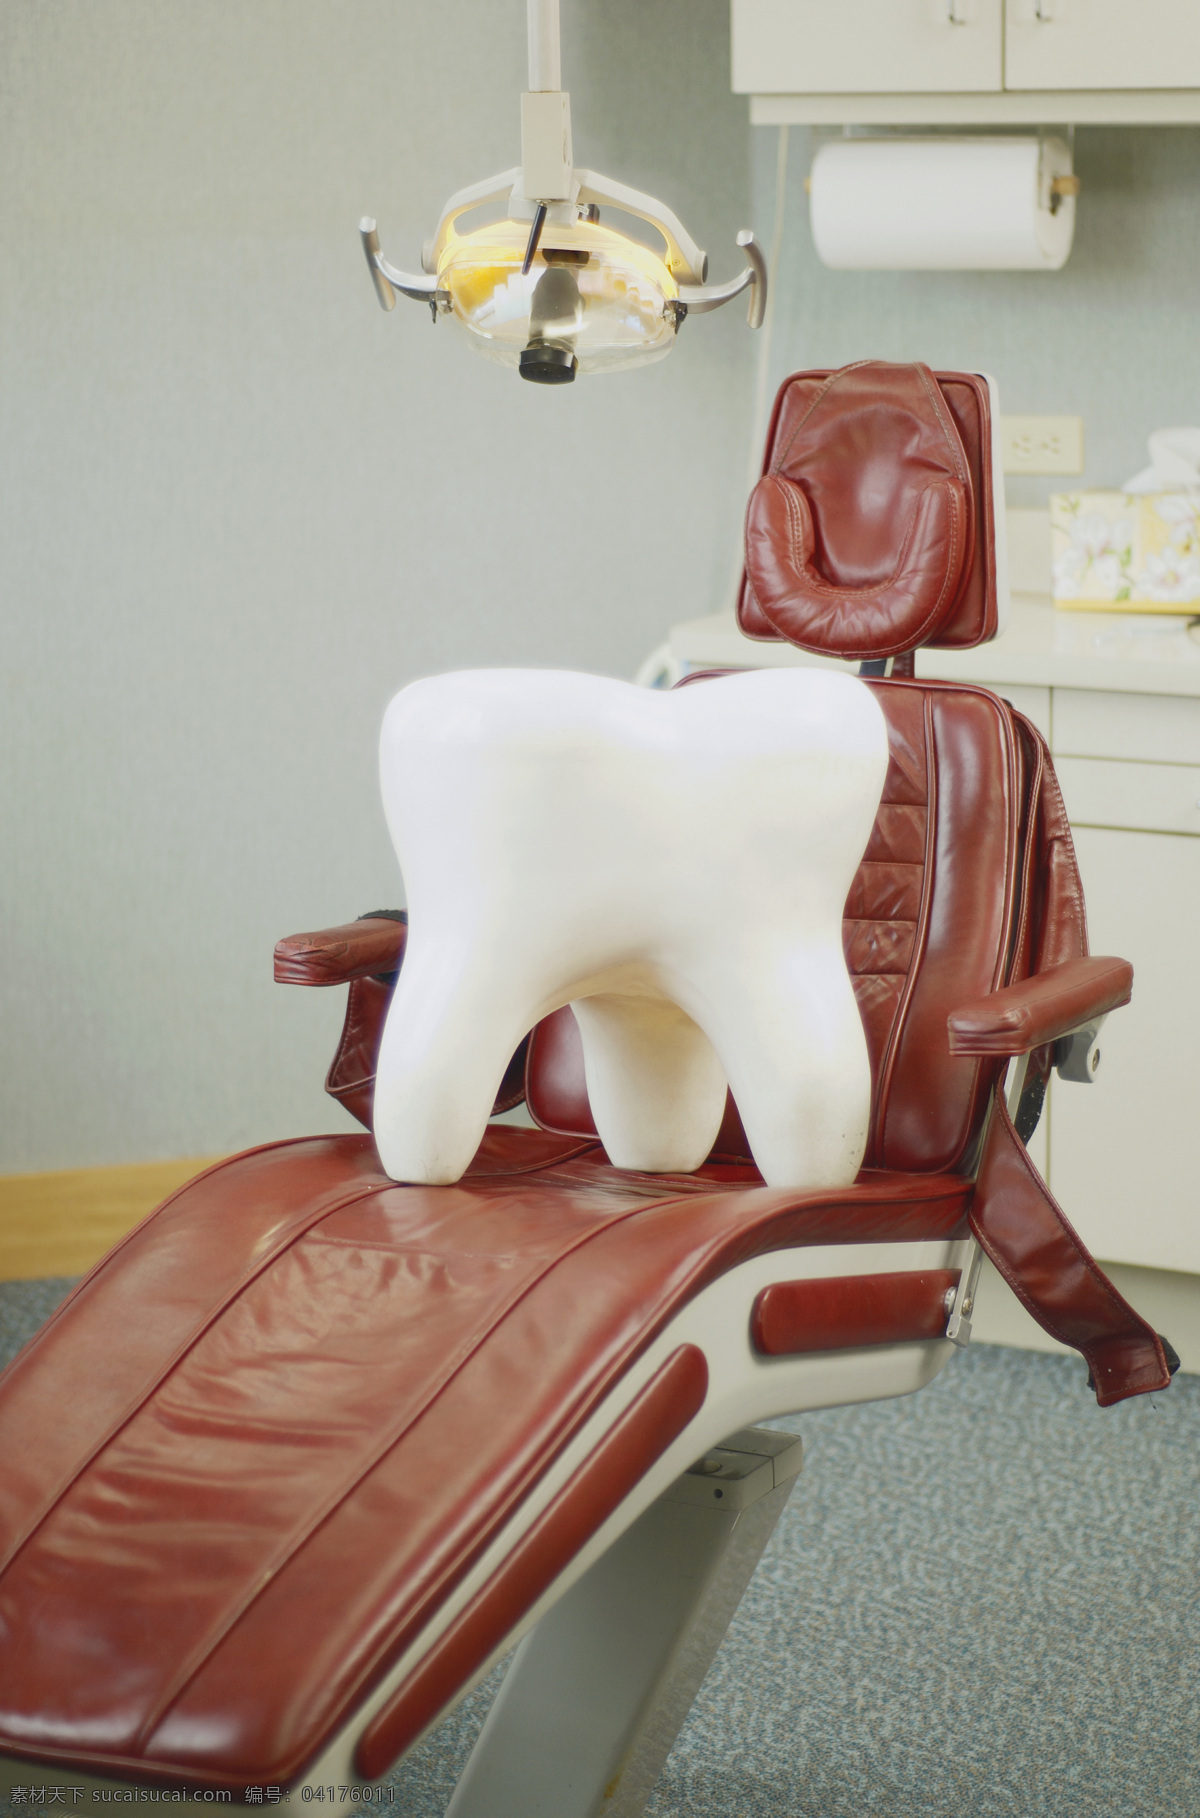 牙齿模型 牙齿 牙膏 牙刷 手术室 生活素材 生活百科